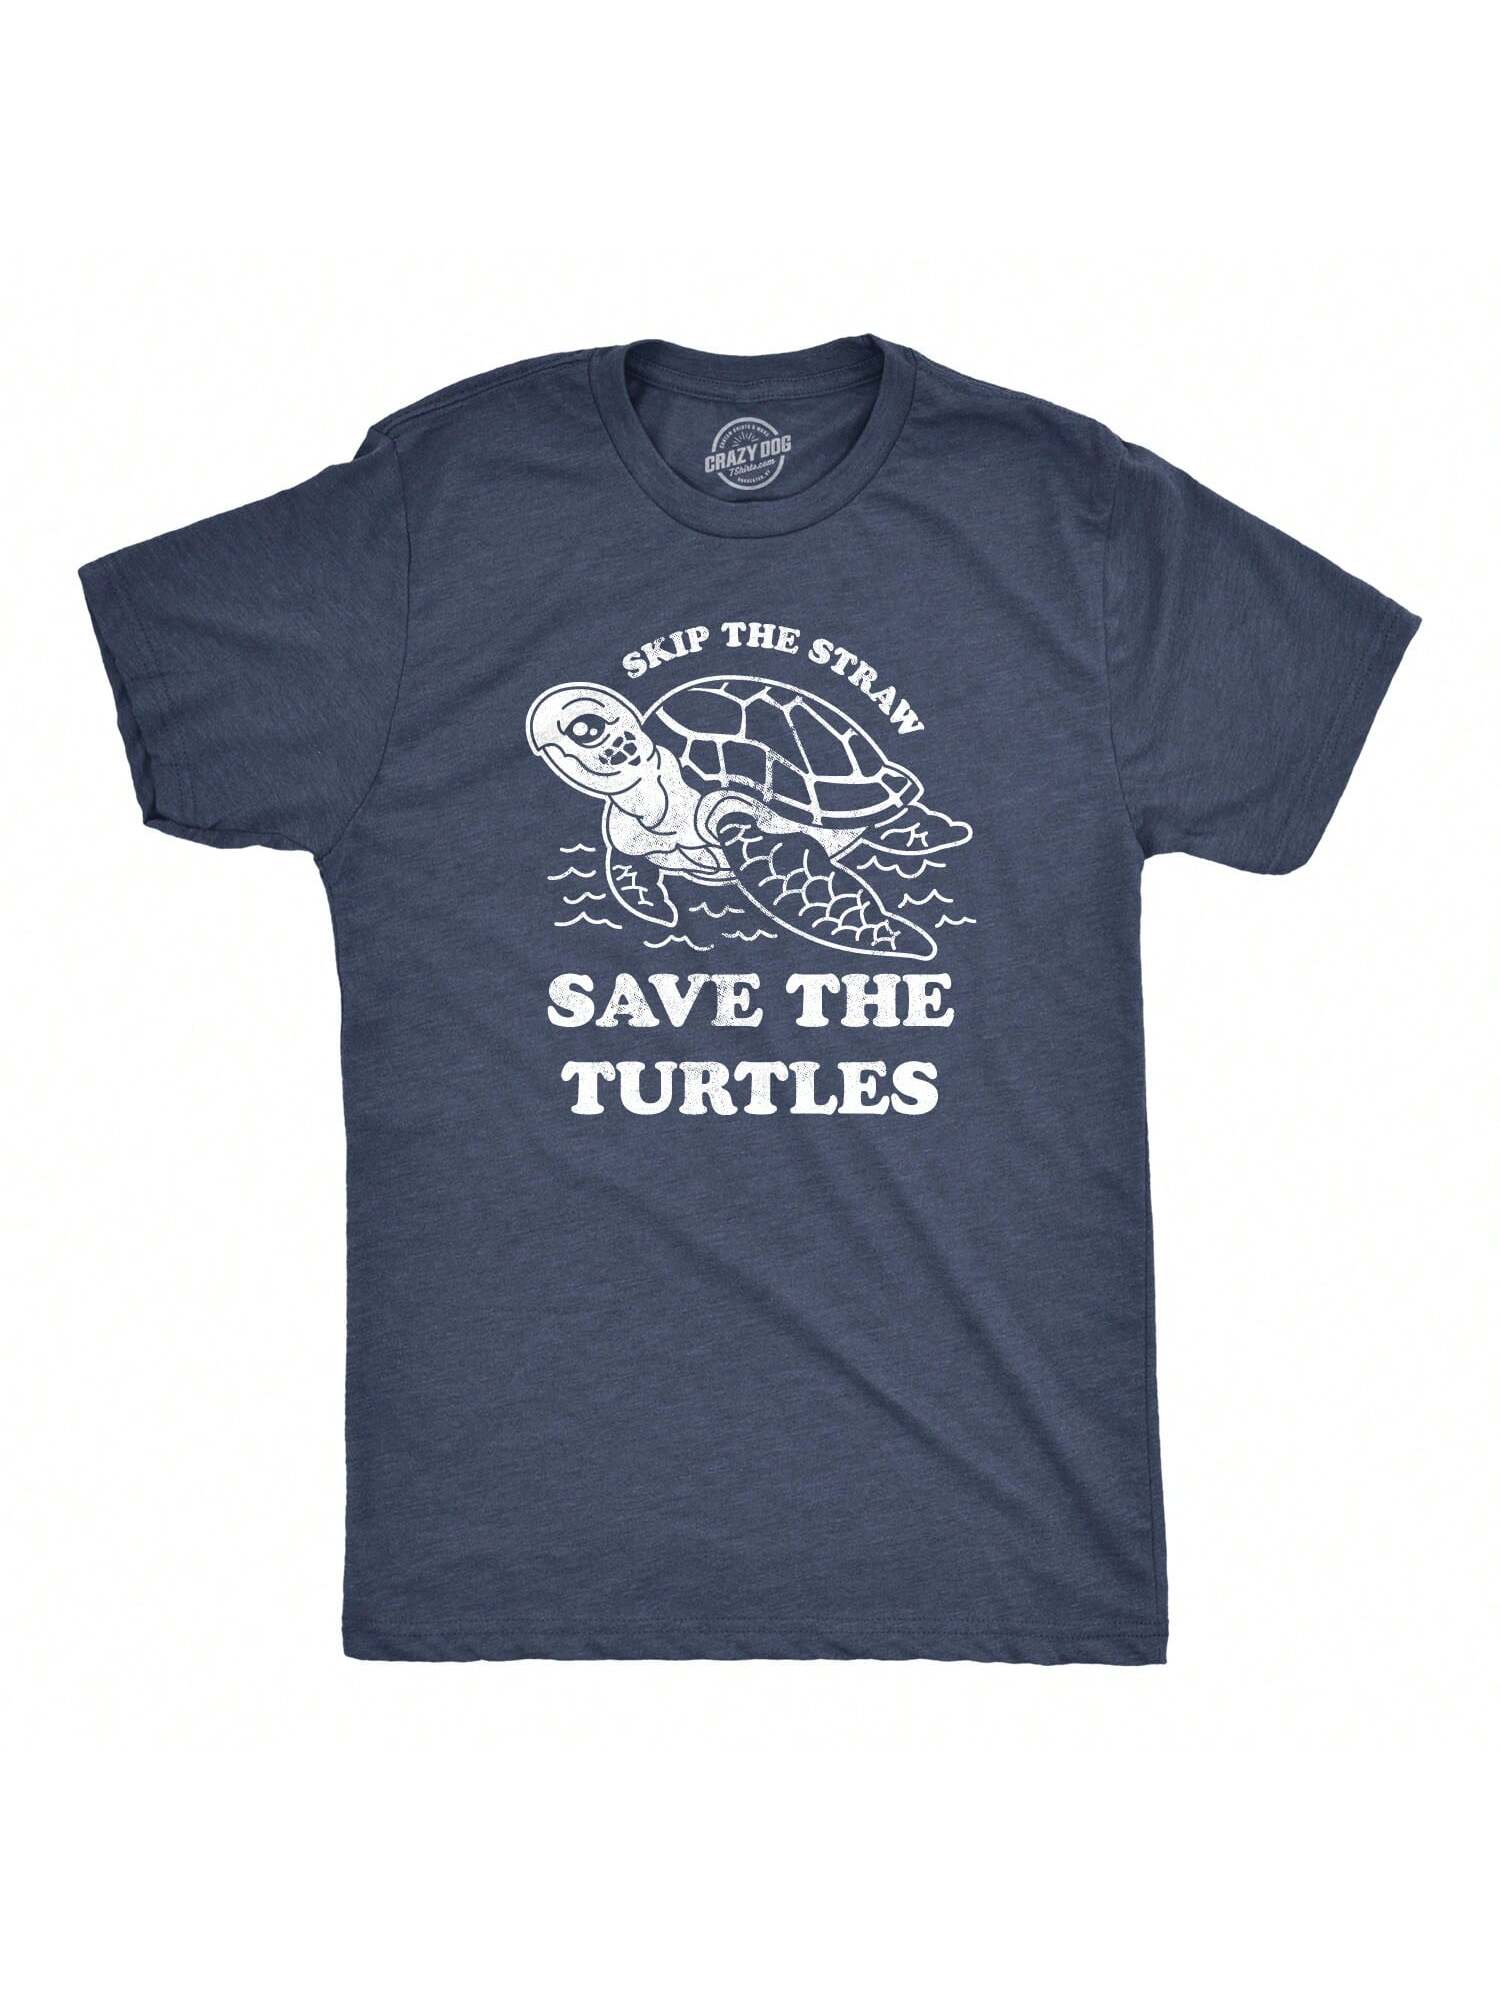 Мужская футболка Skip The Straw Save The Turtles с надписью «Экологическая осведомленность» (темно-синий Хизер) цена и фото